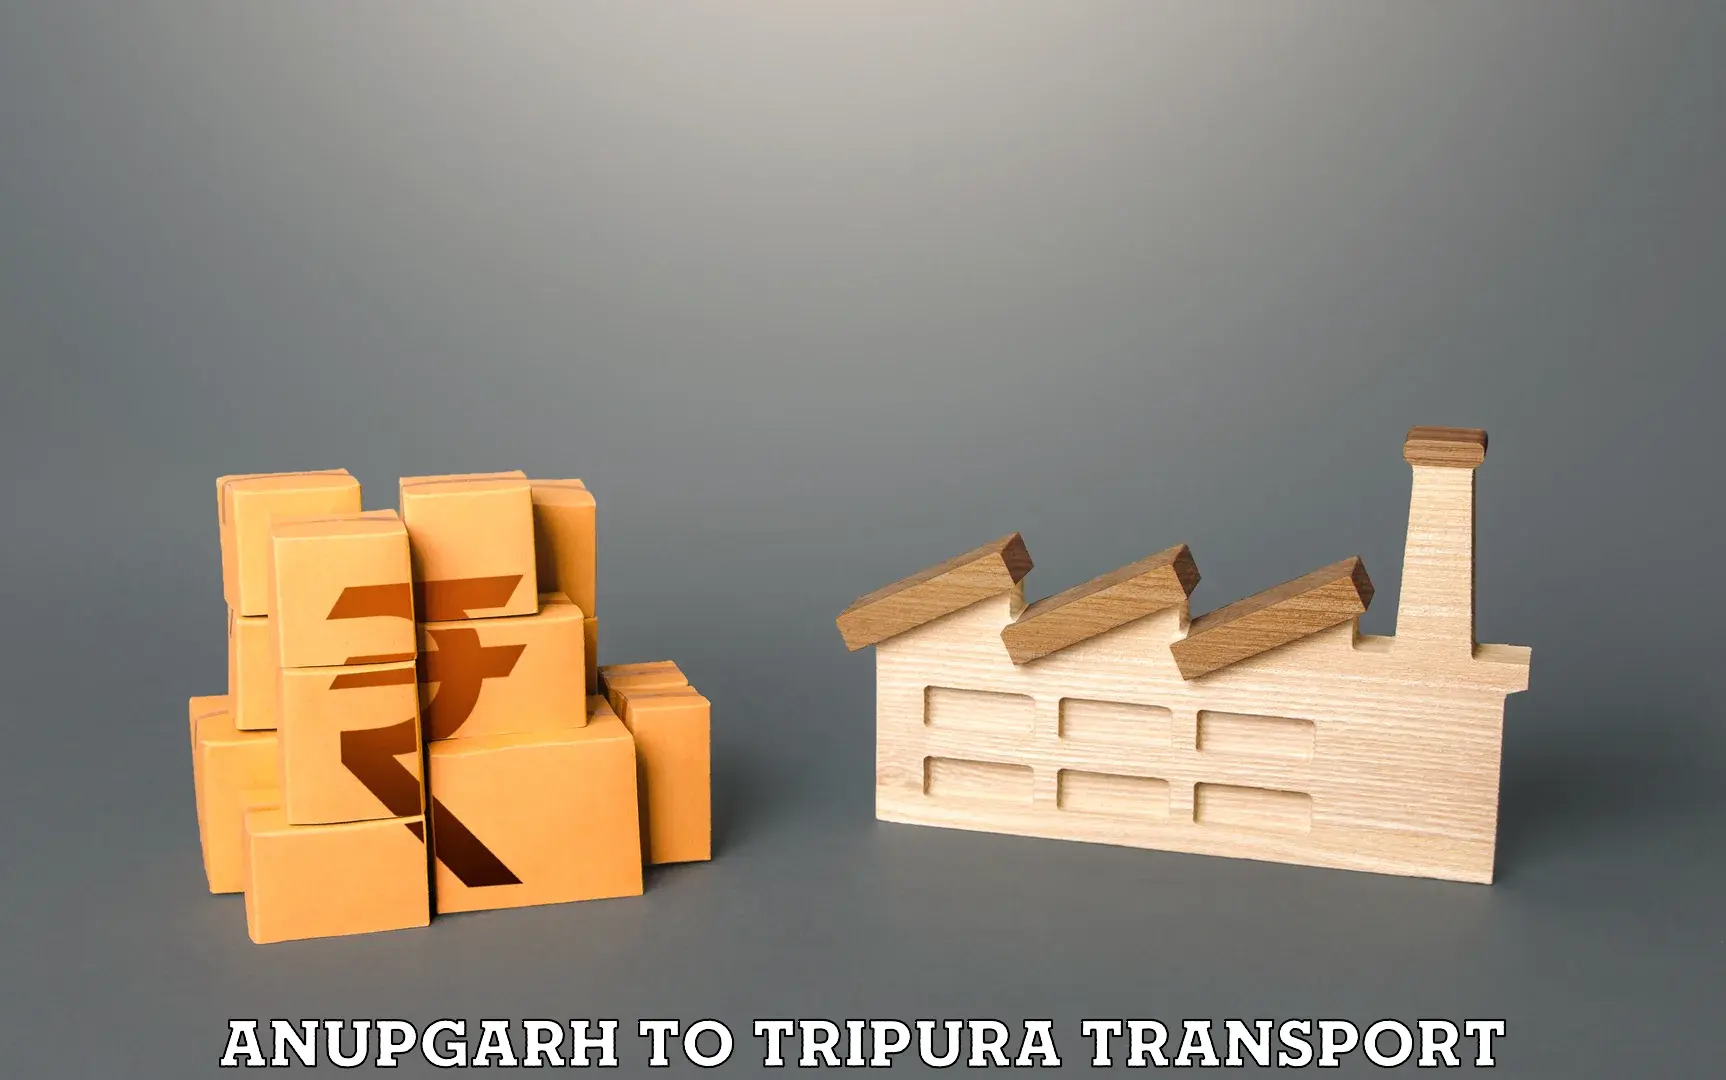 Door to door transport services Anupgarh to Udaipur Tripura